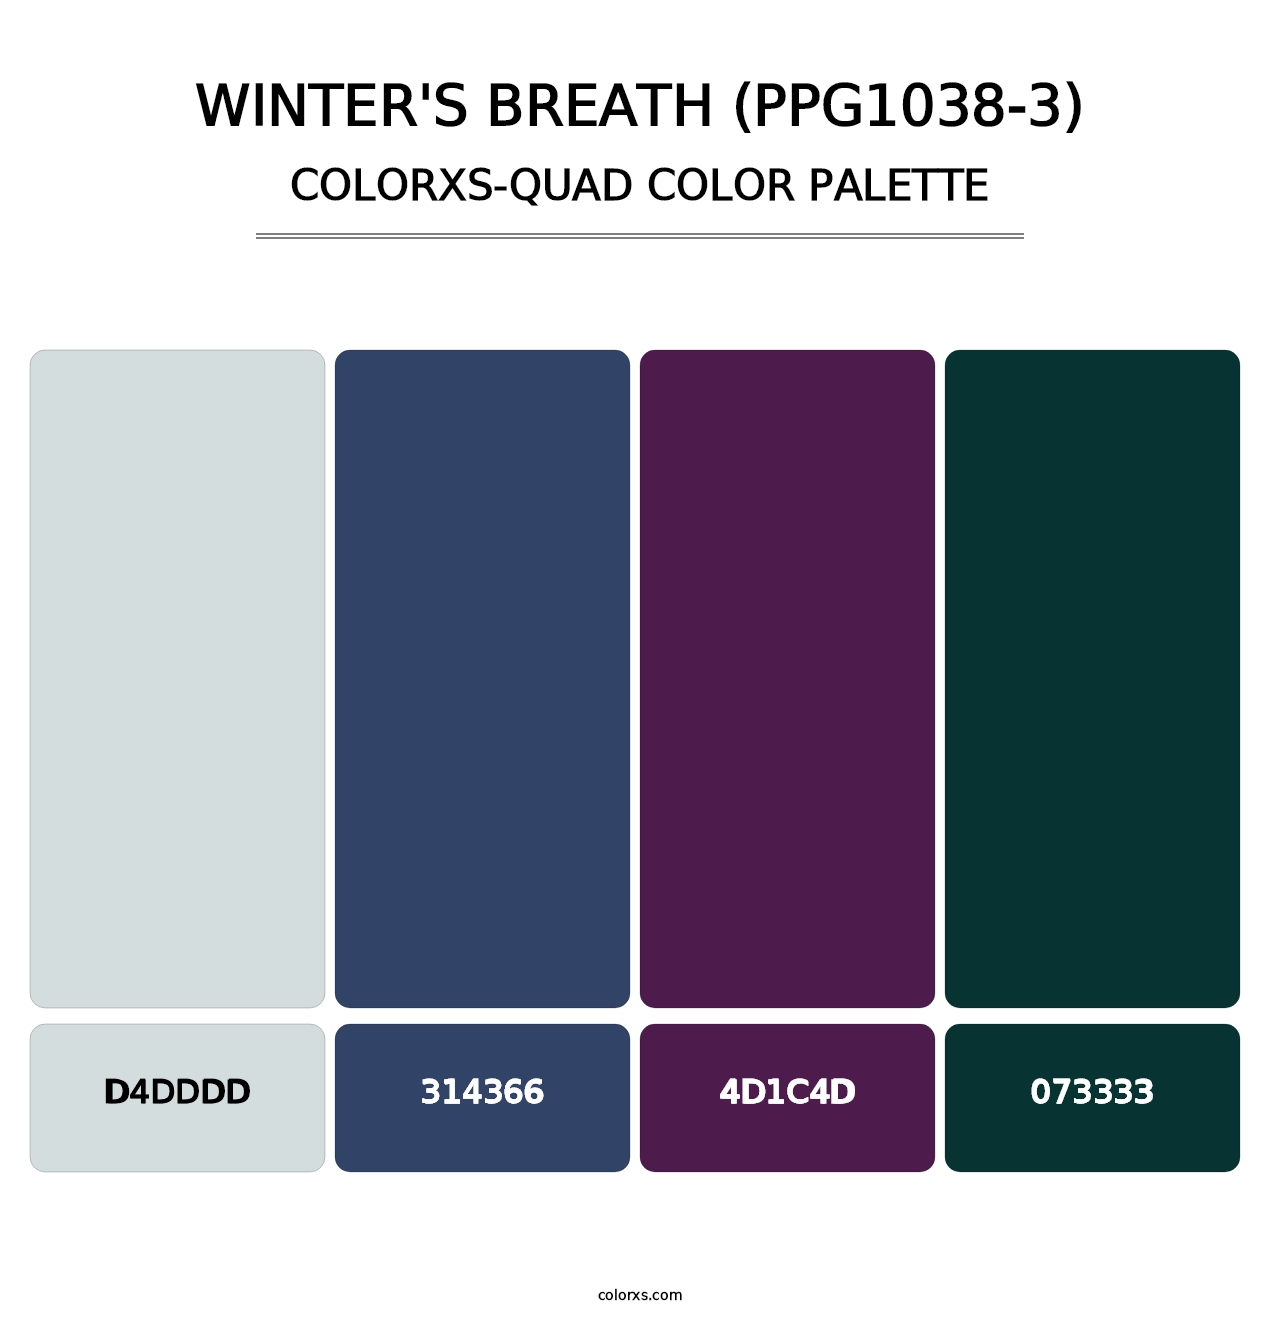 Winter's Breath (PPG1038-3) - Colorxs Quad Palette